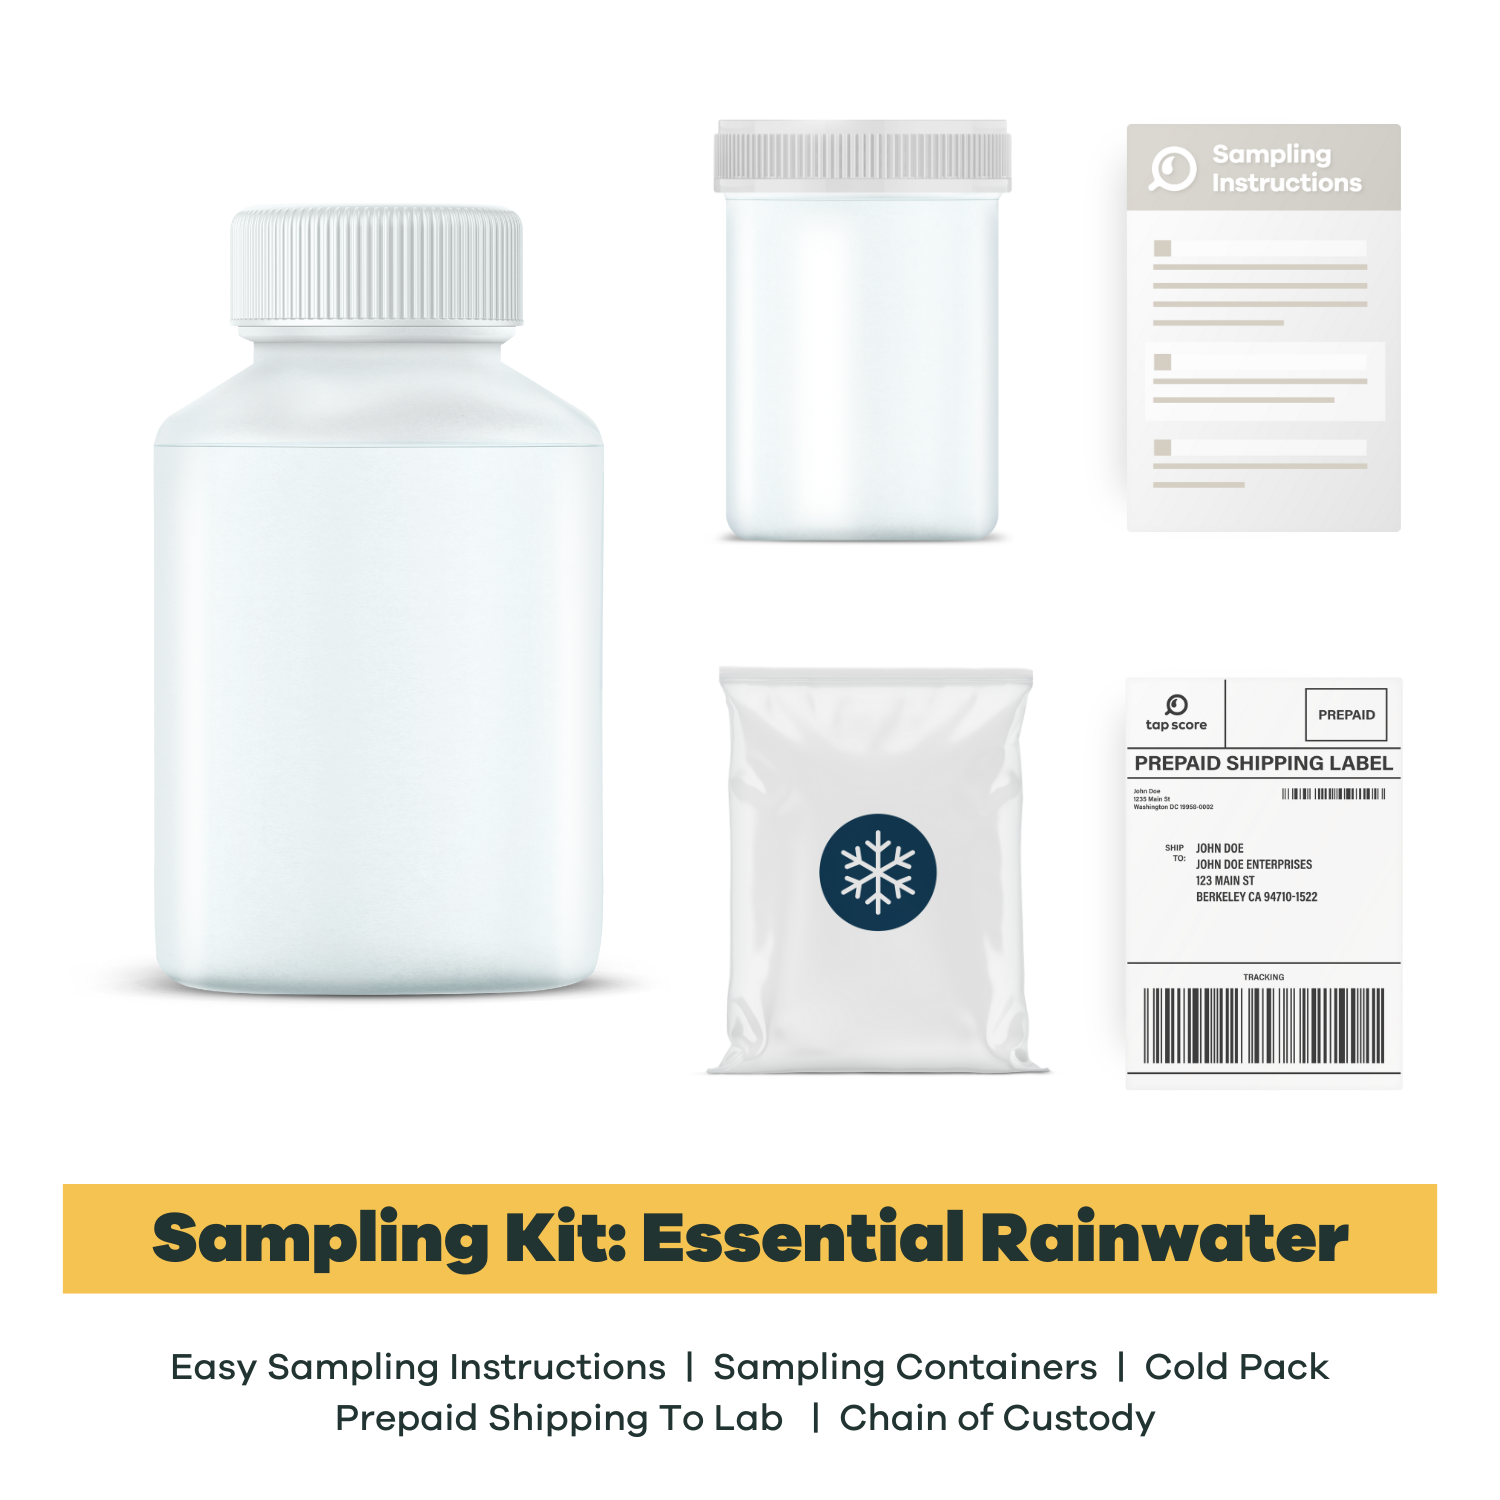 Essential Rainwater Sampling Materials for Laboratory Testing